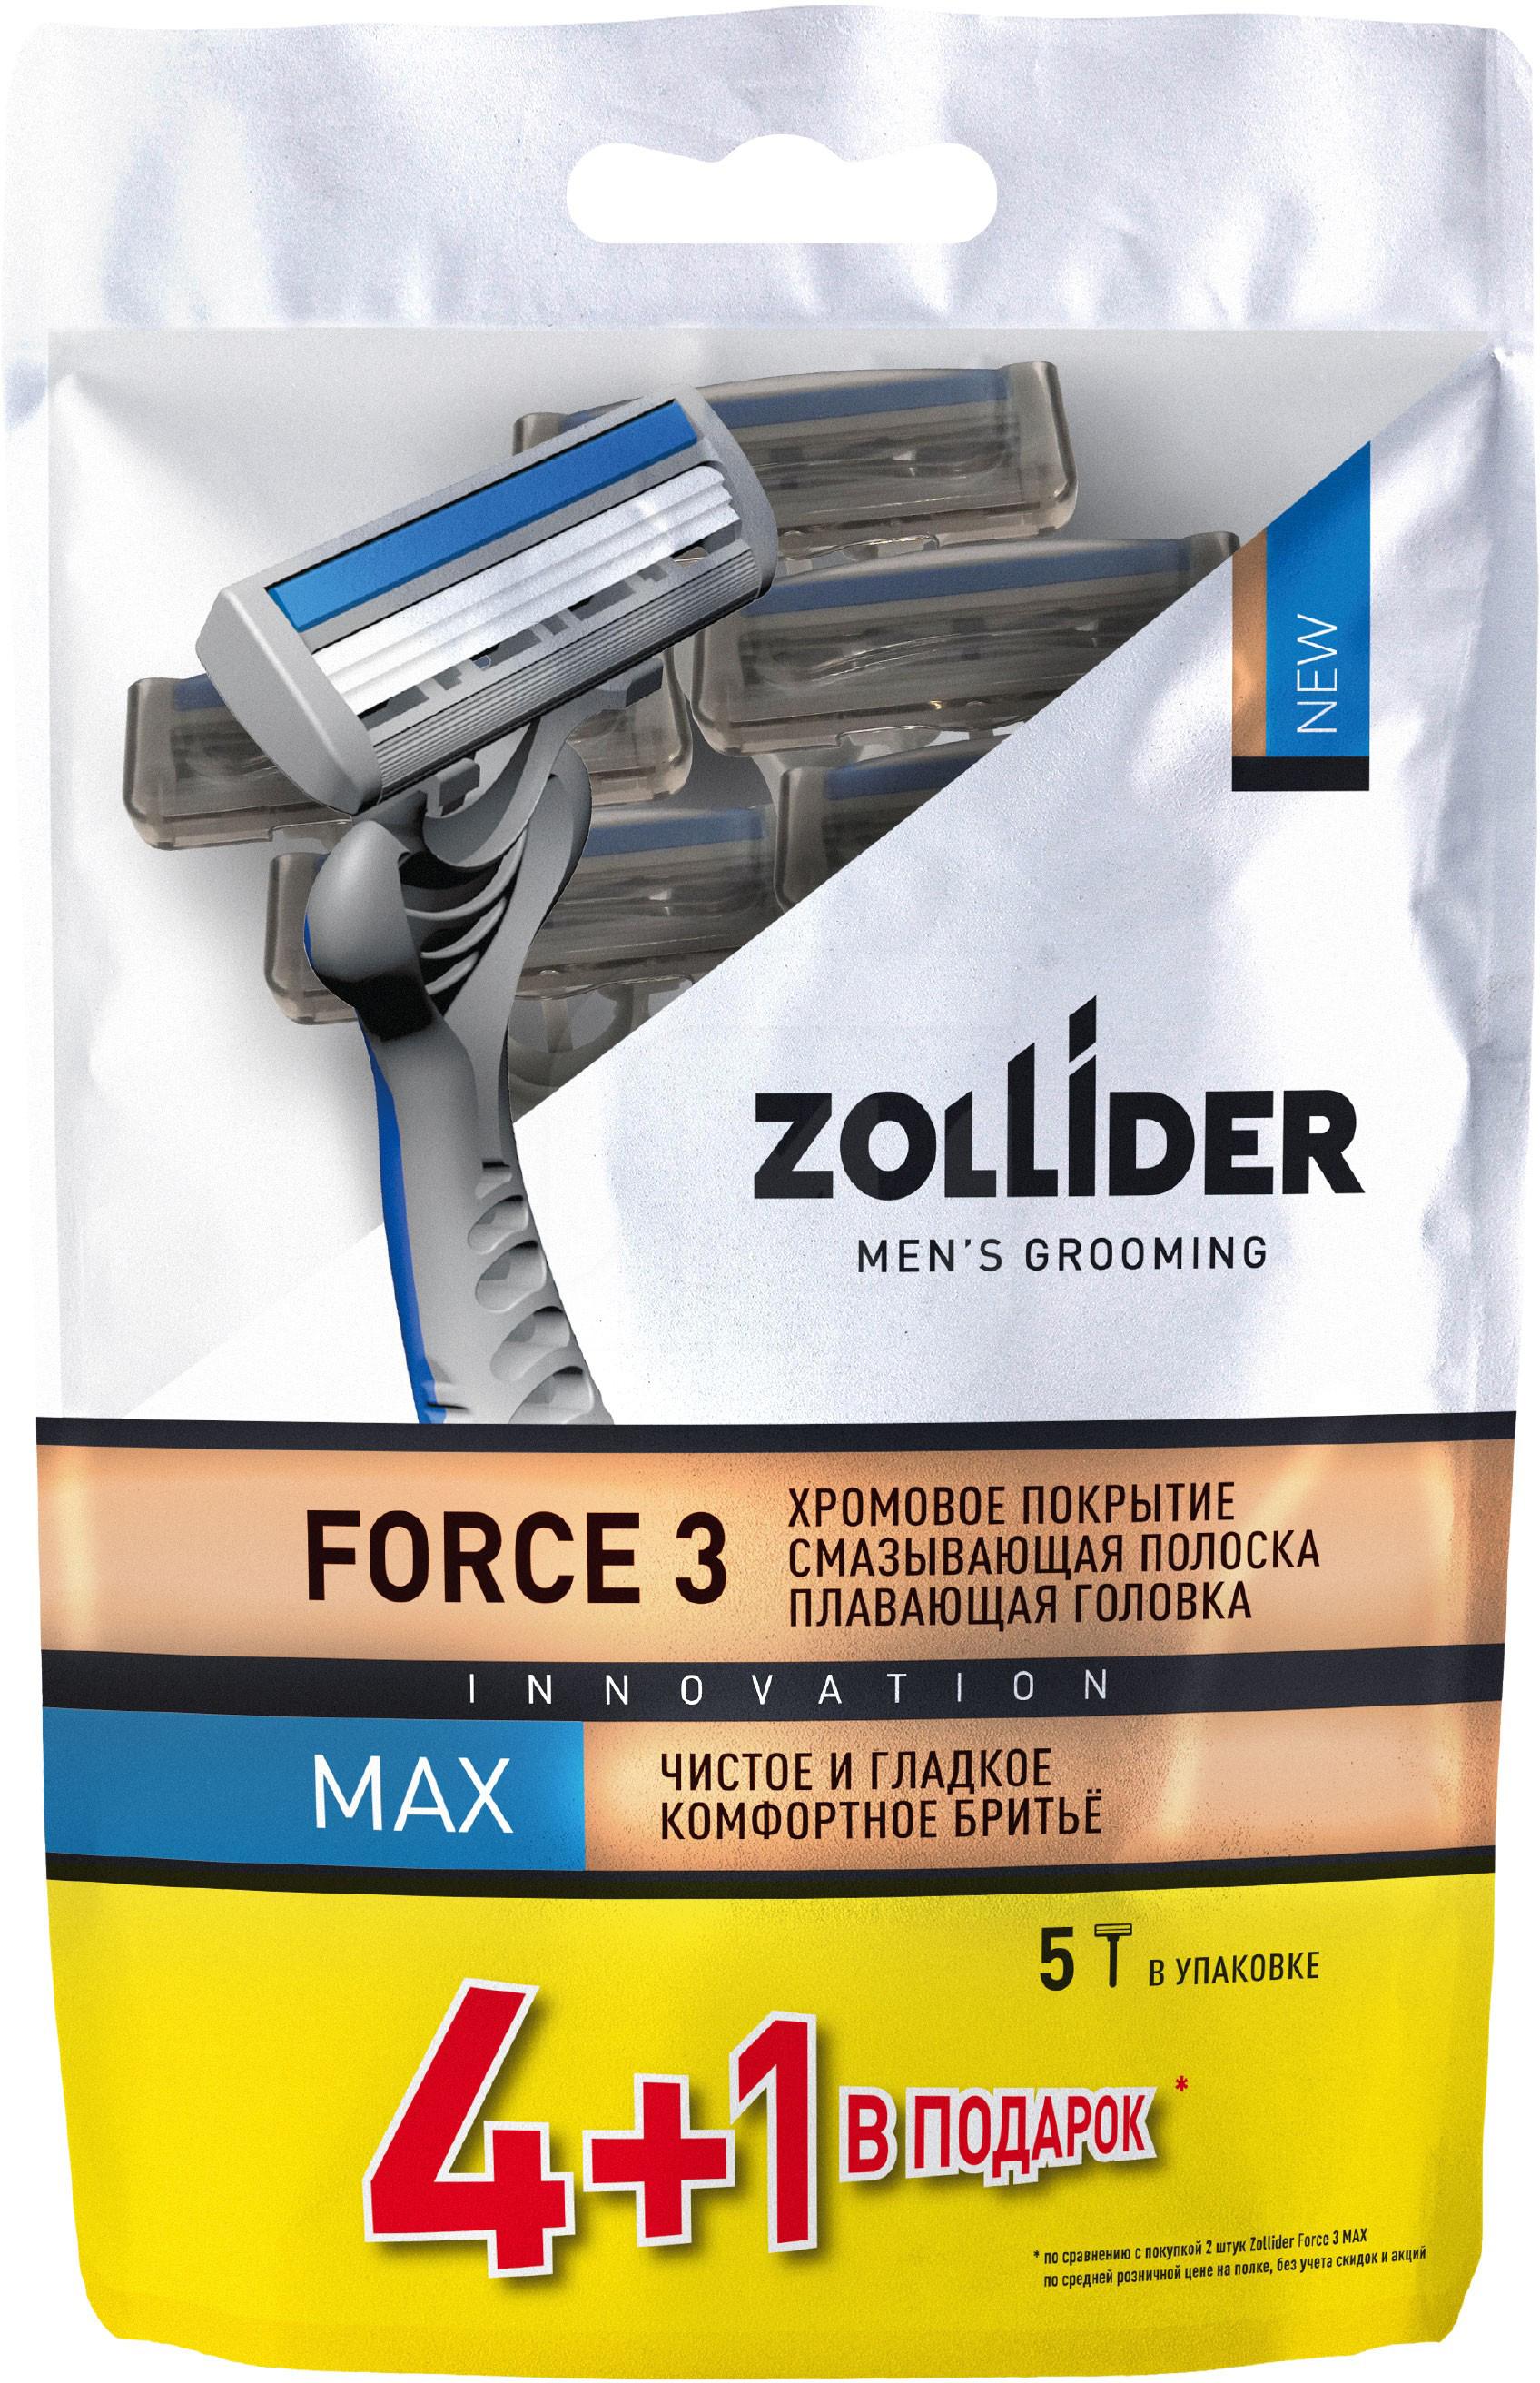 Бритвенные станки мужские Zollider Force 3 Max одноразовые с тройными лезвиями 4 + 1 шт